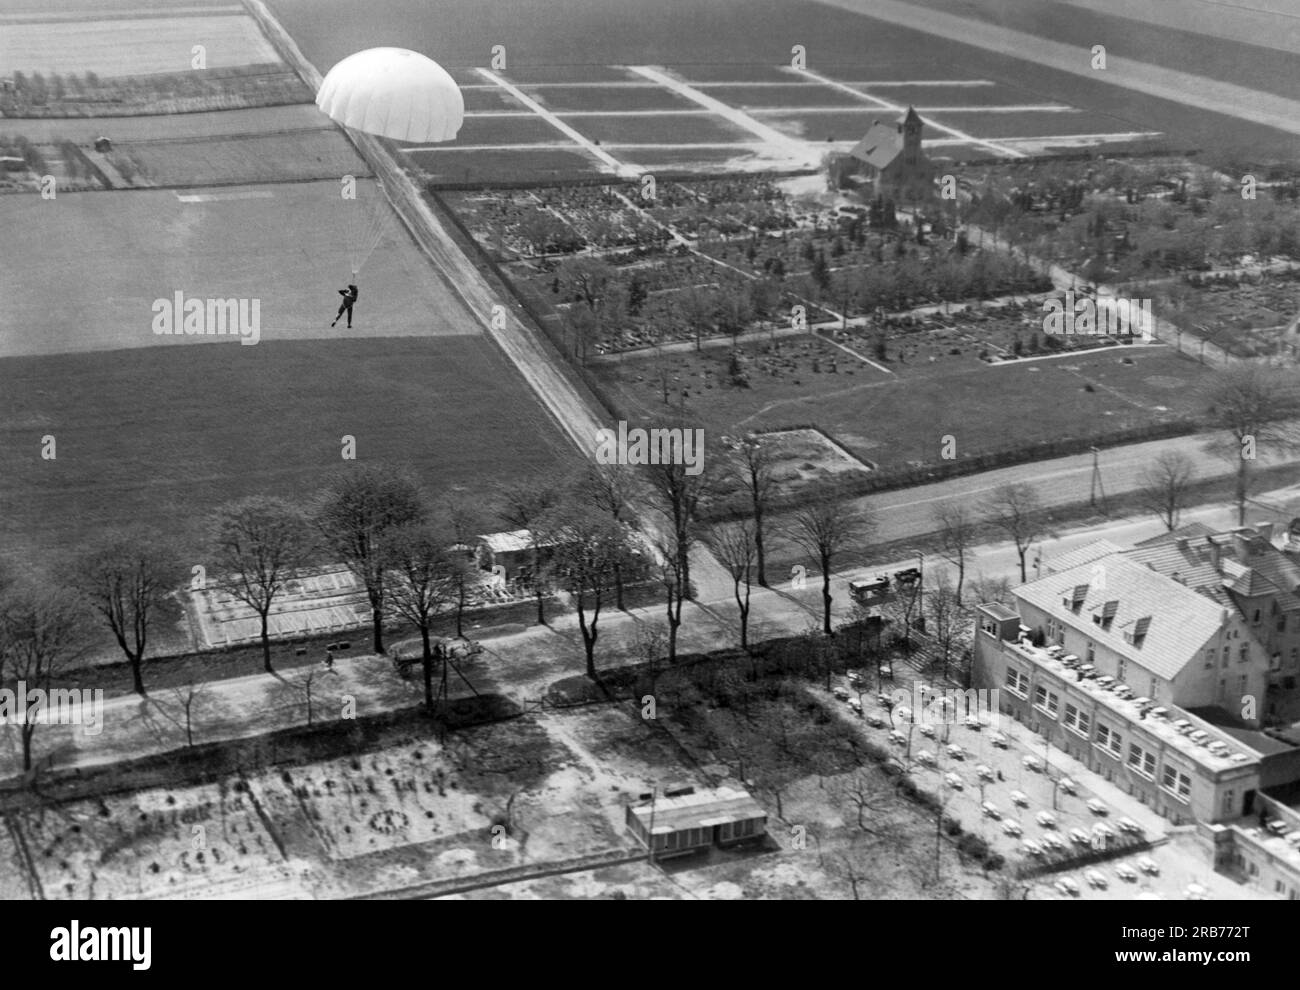 Deutschland: 24. Mai 1931 Willi Ruge ist bestrebt, die ersten Selbstporträts vom Fallschirm zu machen, wenn er aus einem Flugzeug springt. Hier fotografiert er sich selbst, während er hinabsteigt, ist aber auch besorgt über die Hochspannungsleitungen unten. Stockfoto